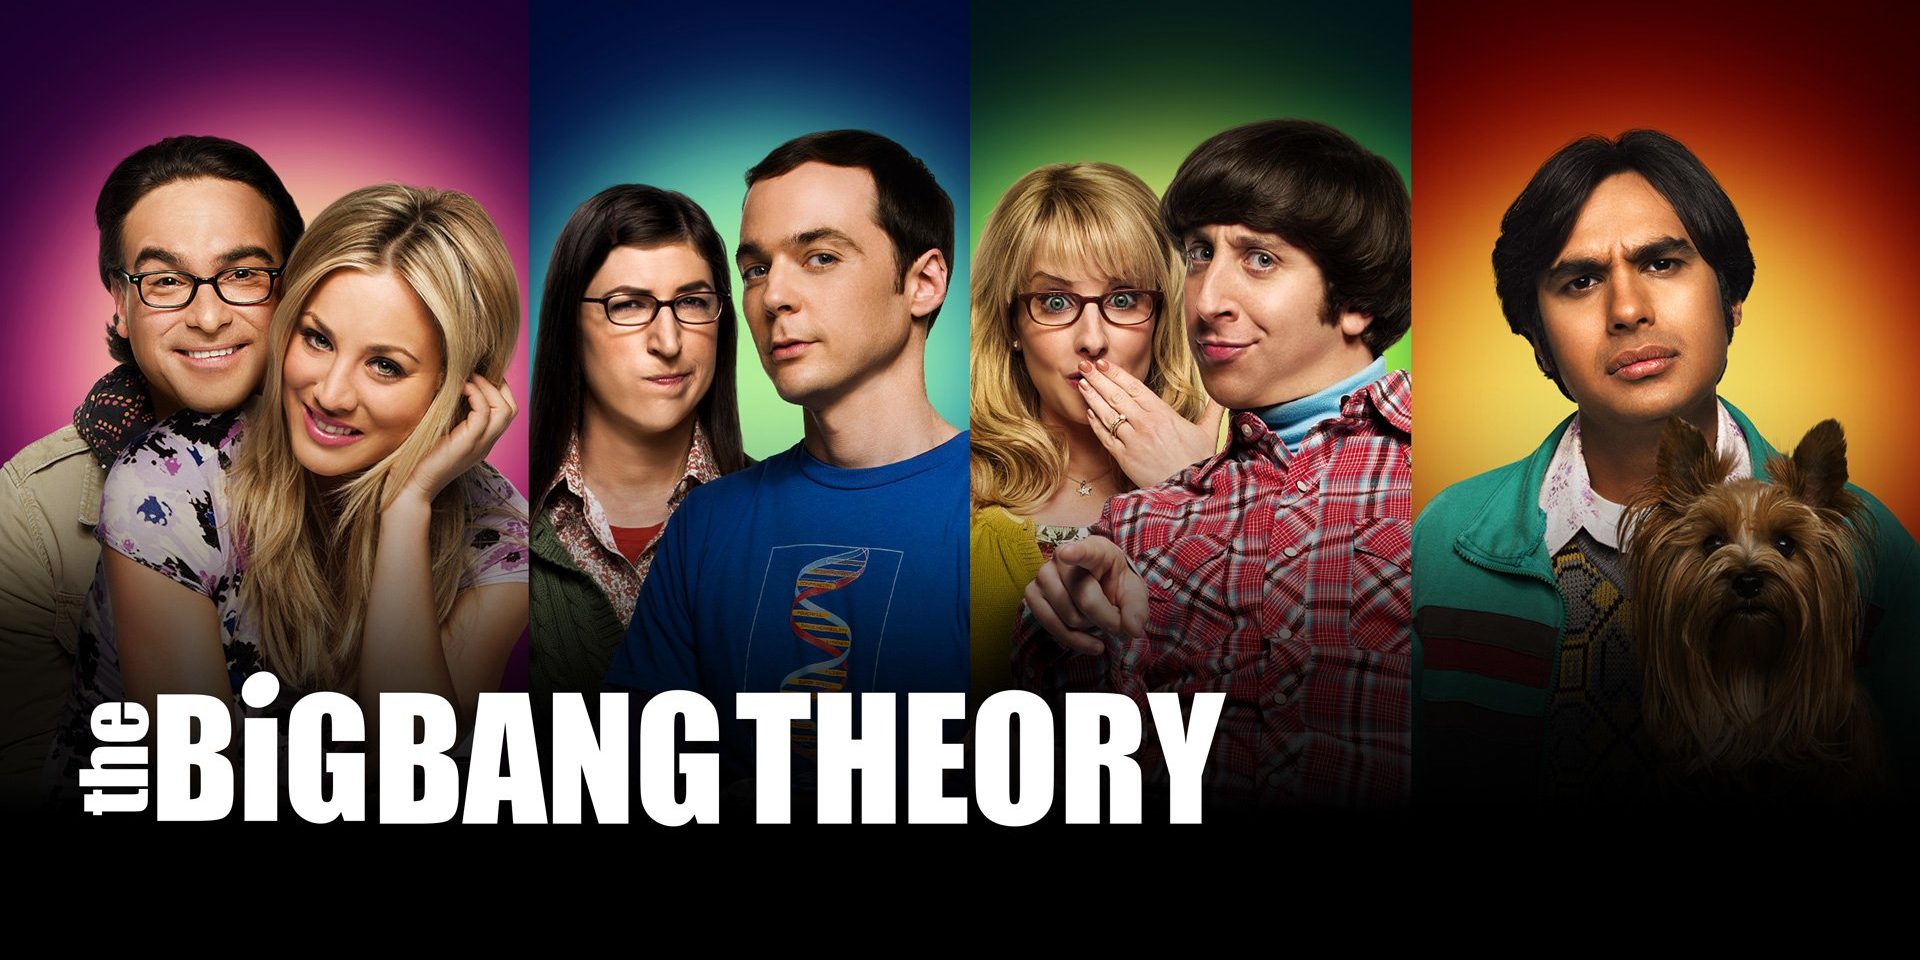 The Big Bang Theory una puntata commovente tra Mark Hamill e Steven Hawking